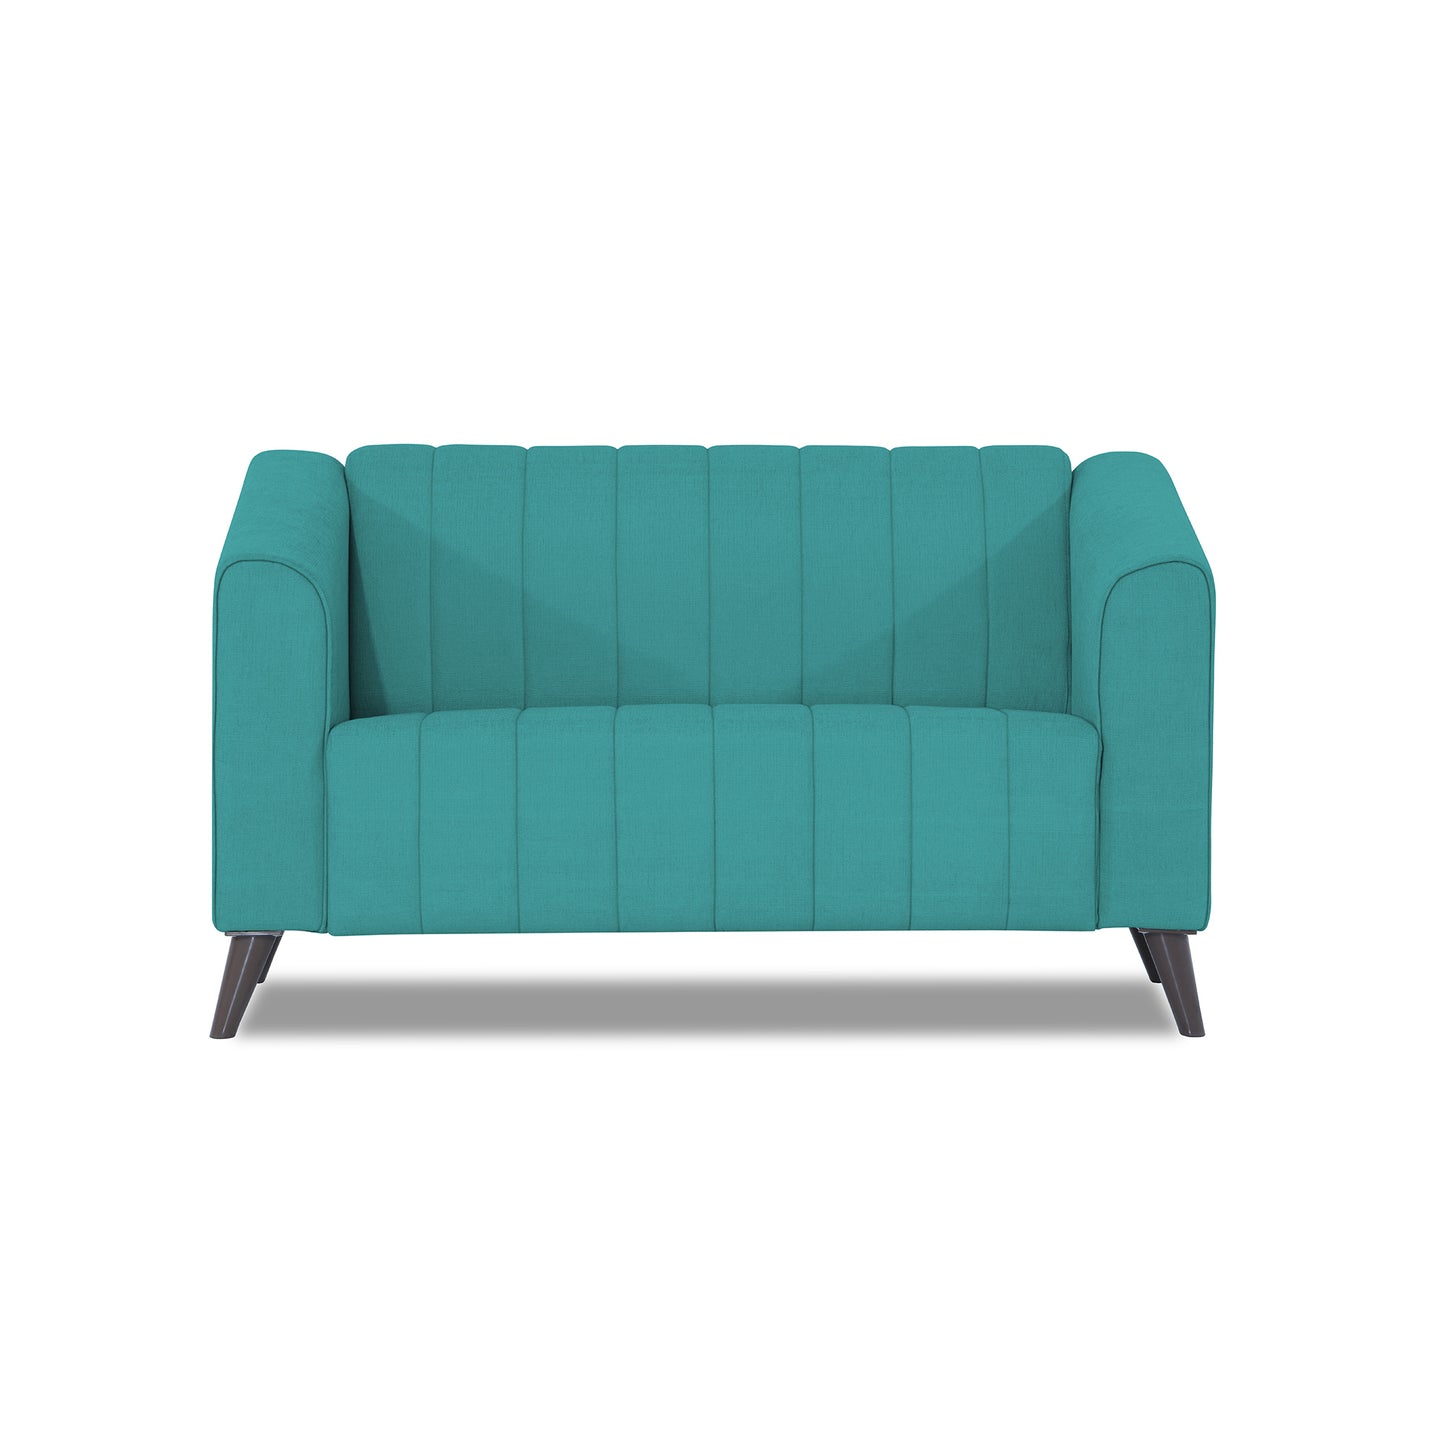 Adorn India Premium Laurel 2 Seater Sofa (Aqua Blue)